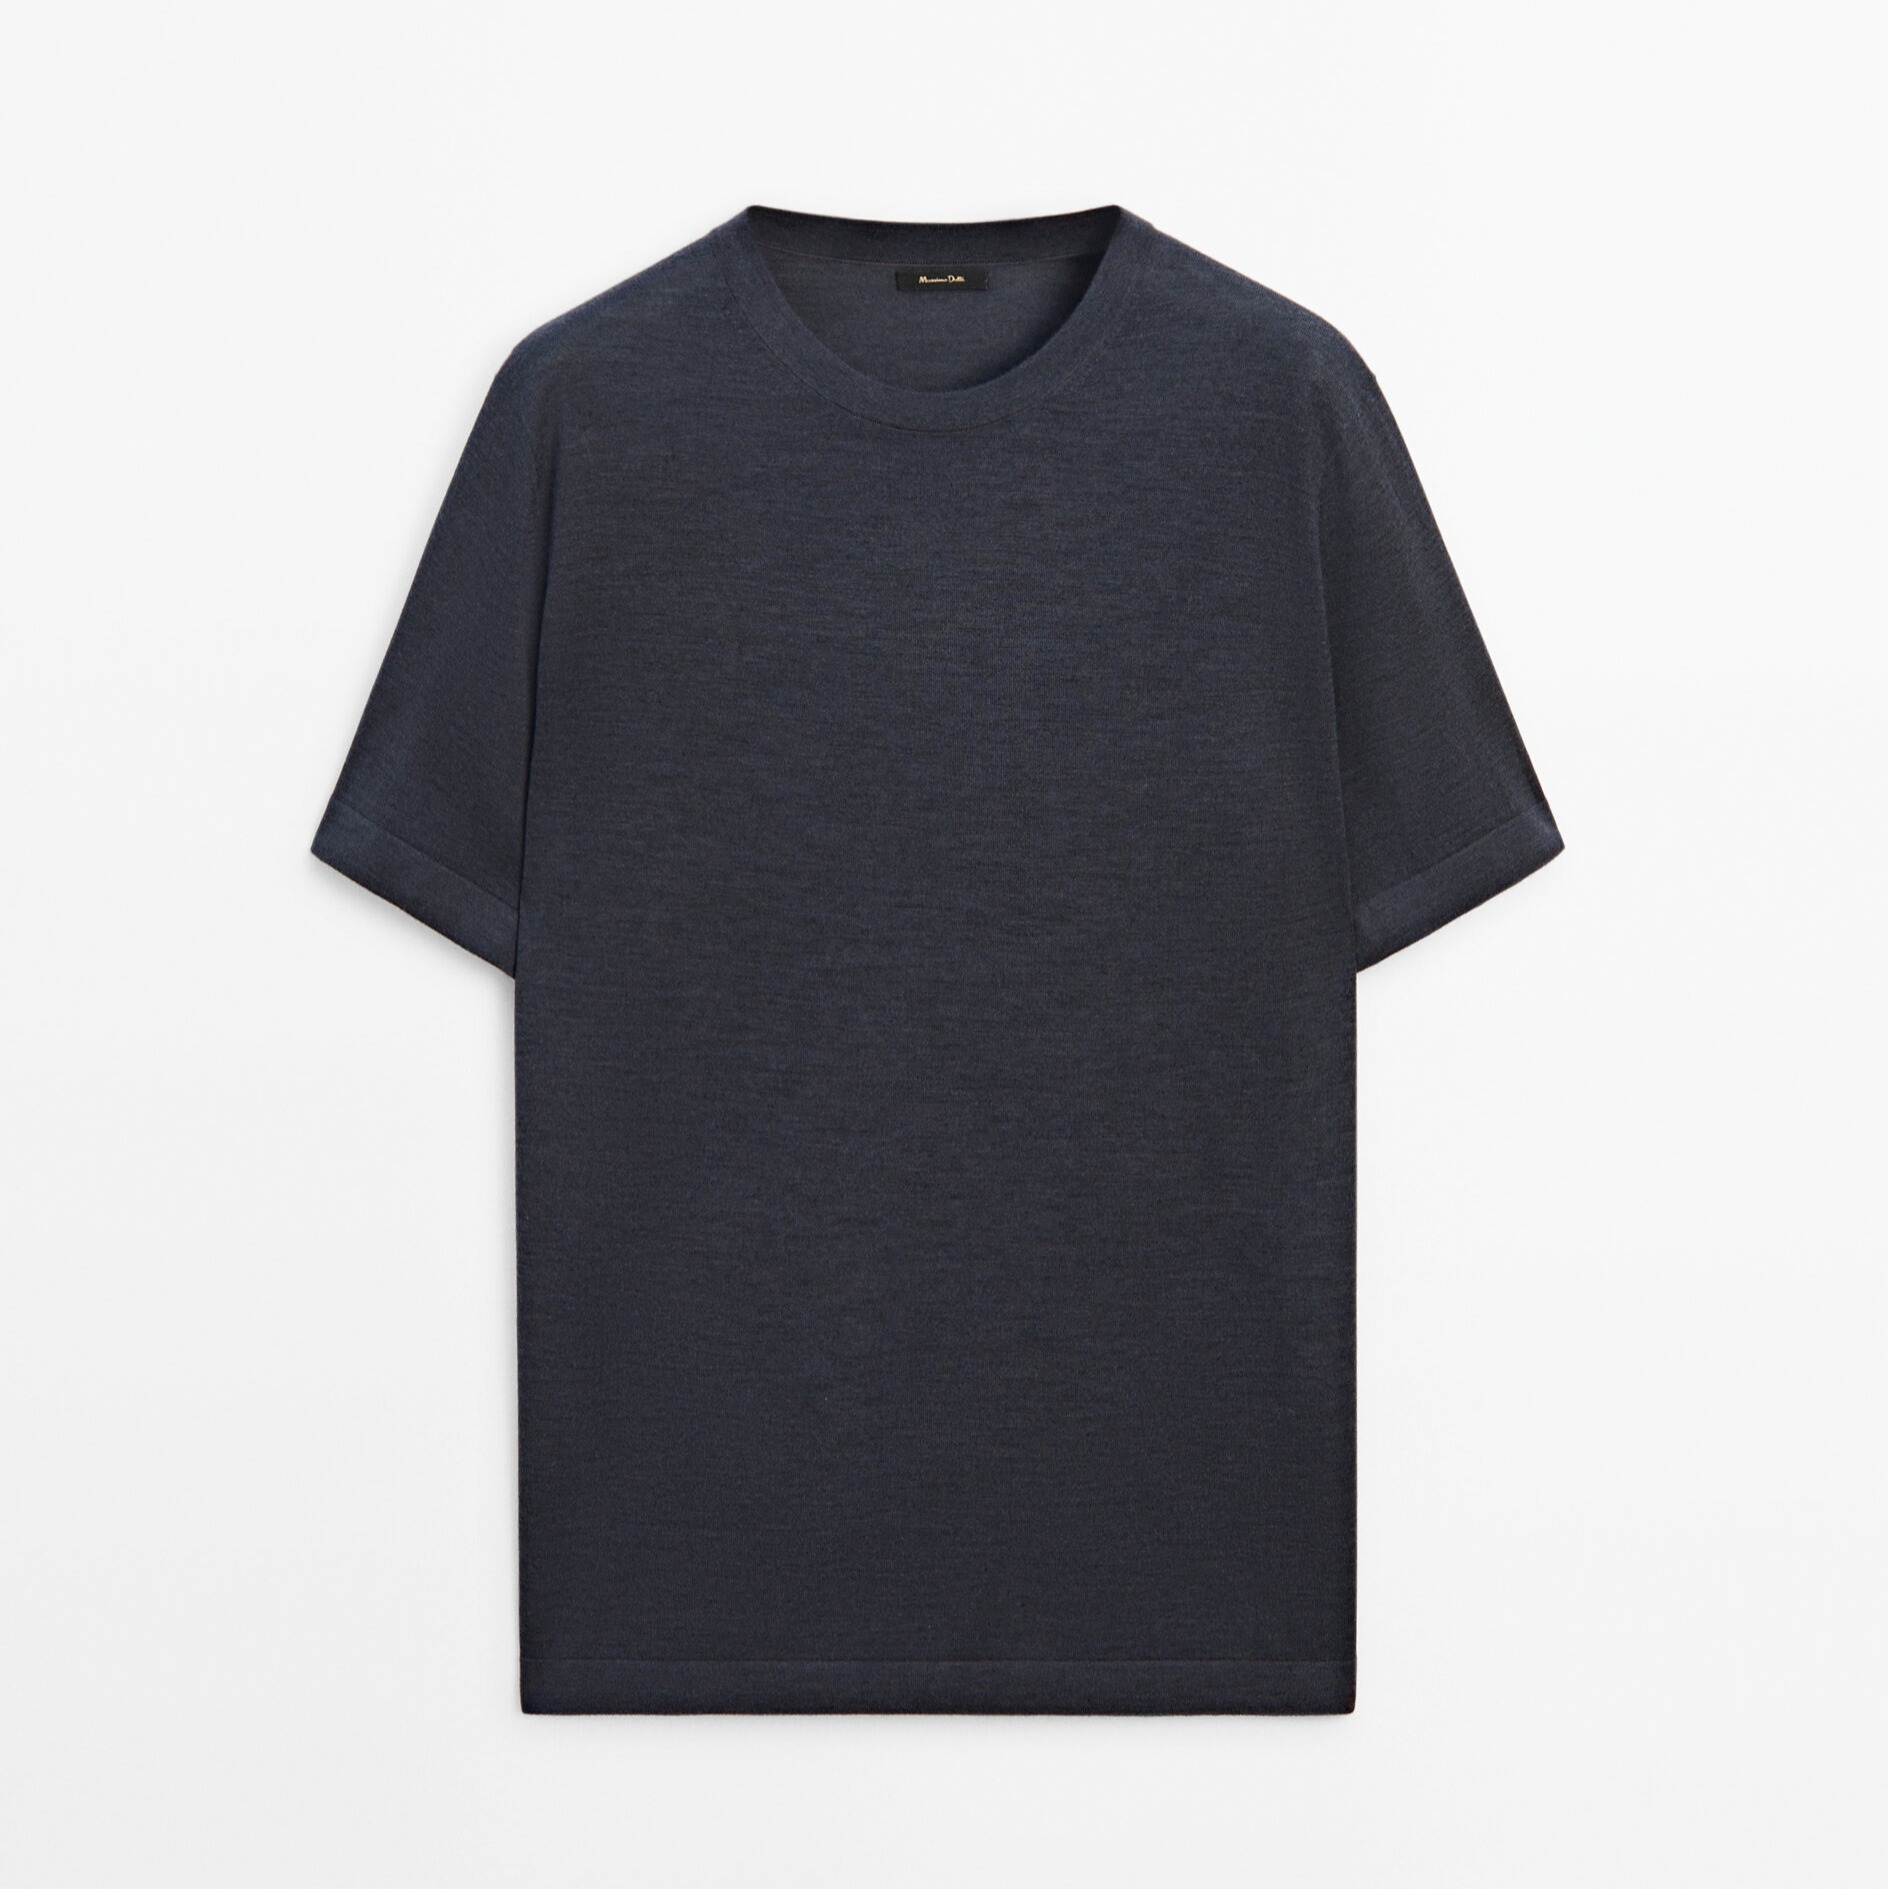 Футболка Massimo Dutti Short Sleeve Wool Blend, темно-серый футболка с коротким рукавом новинка лета 2021 вязаная корейская свободная приталенная рубашка с круглым вырезом джокер пуловер куртка для